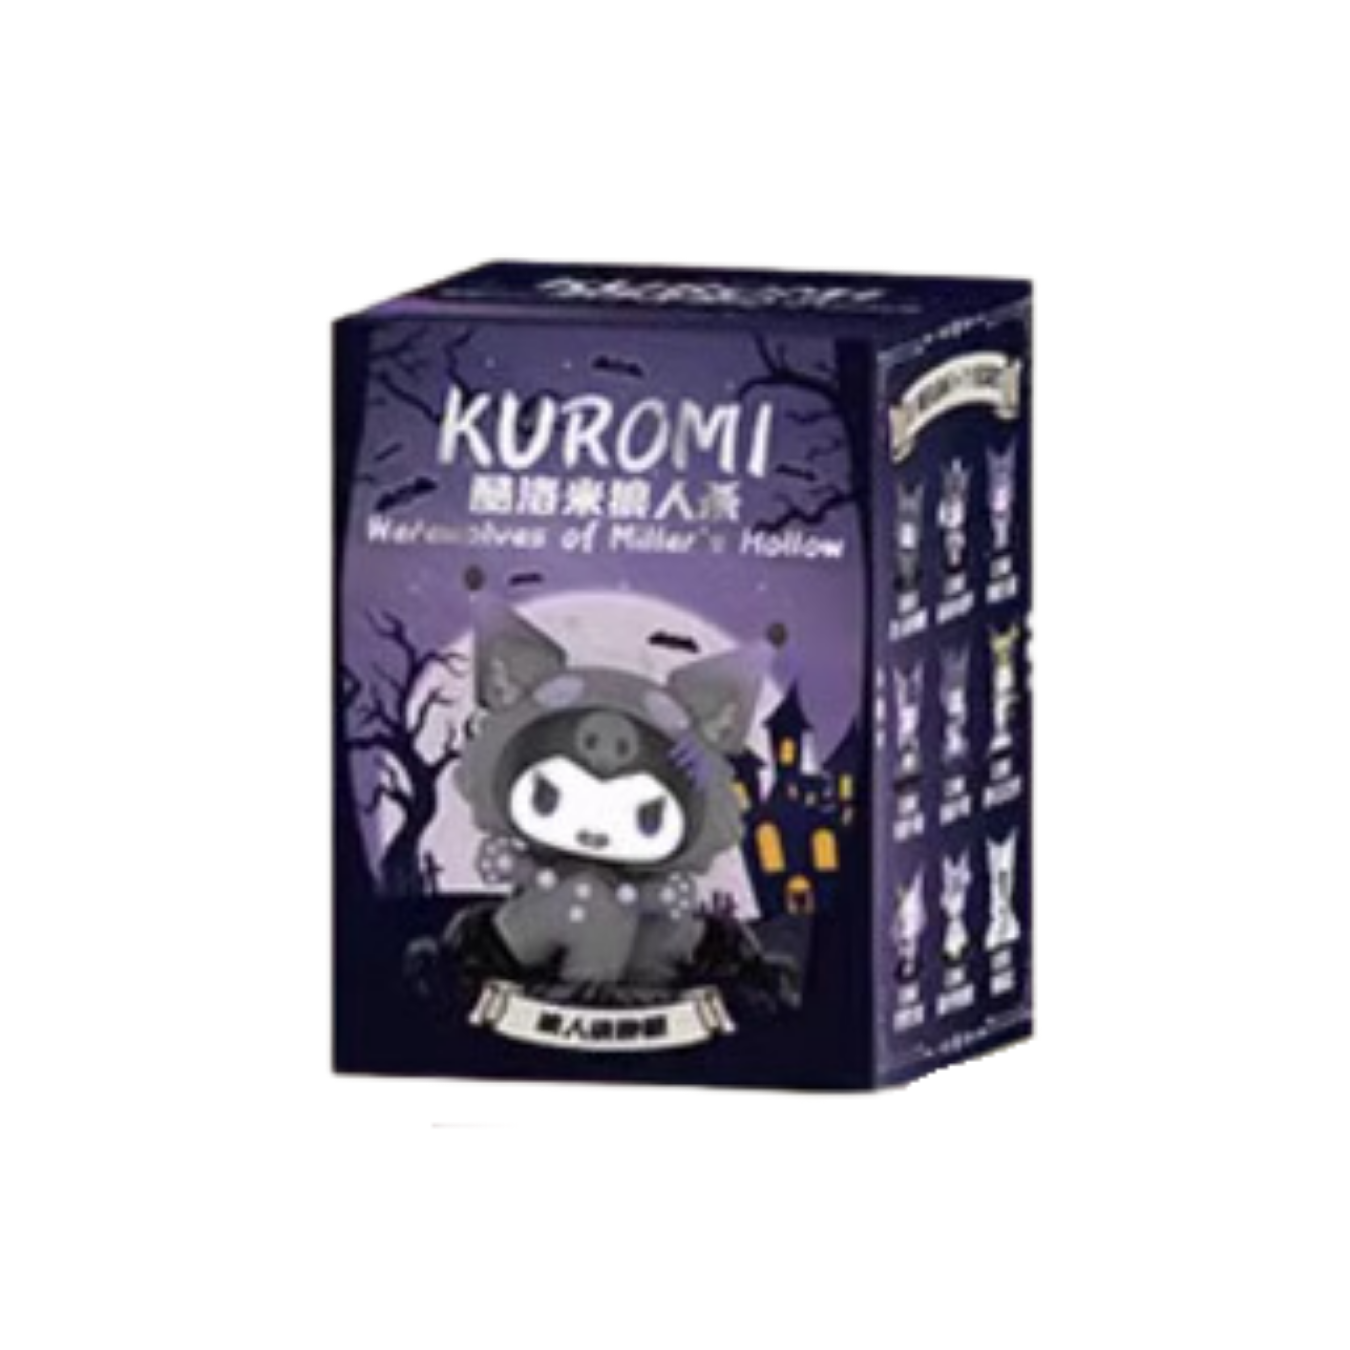 Sanrio Characters Kuromi Werewolves of Millers Hollow Series Blind Box